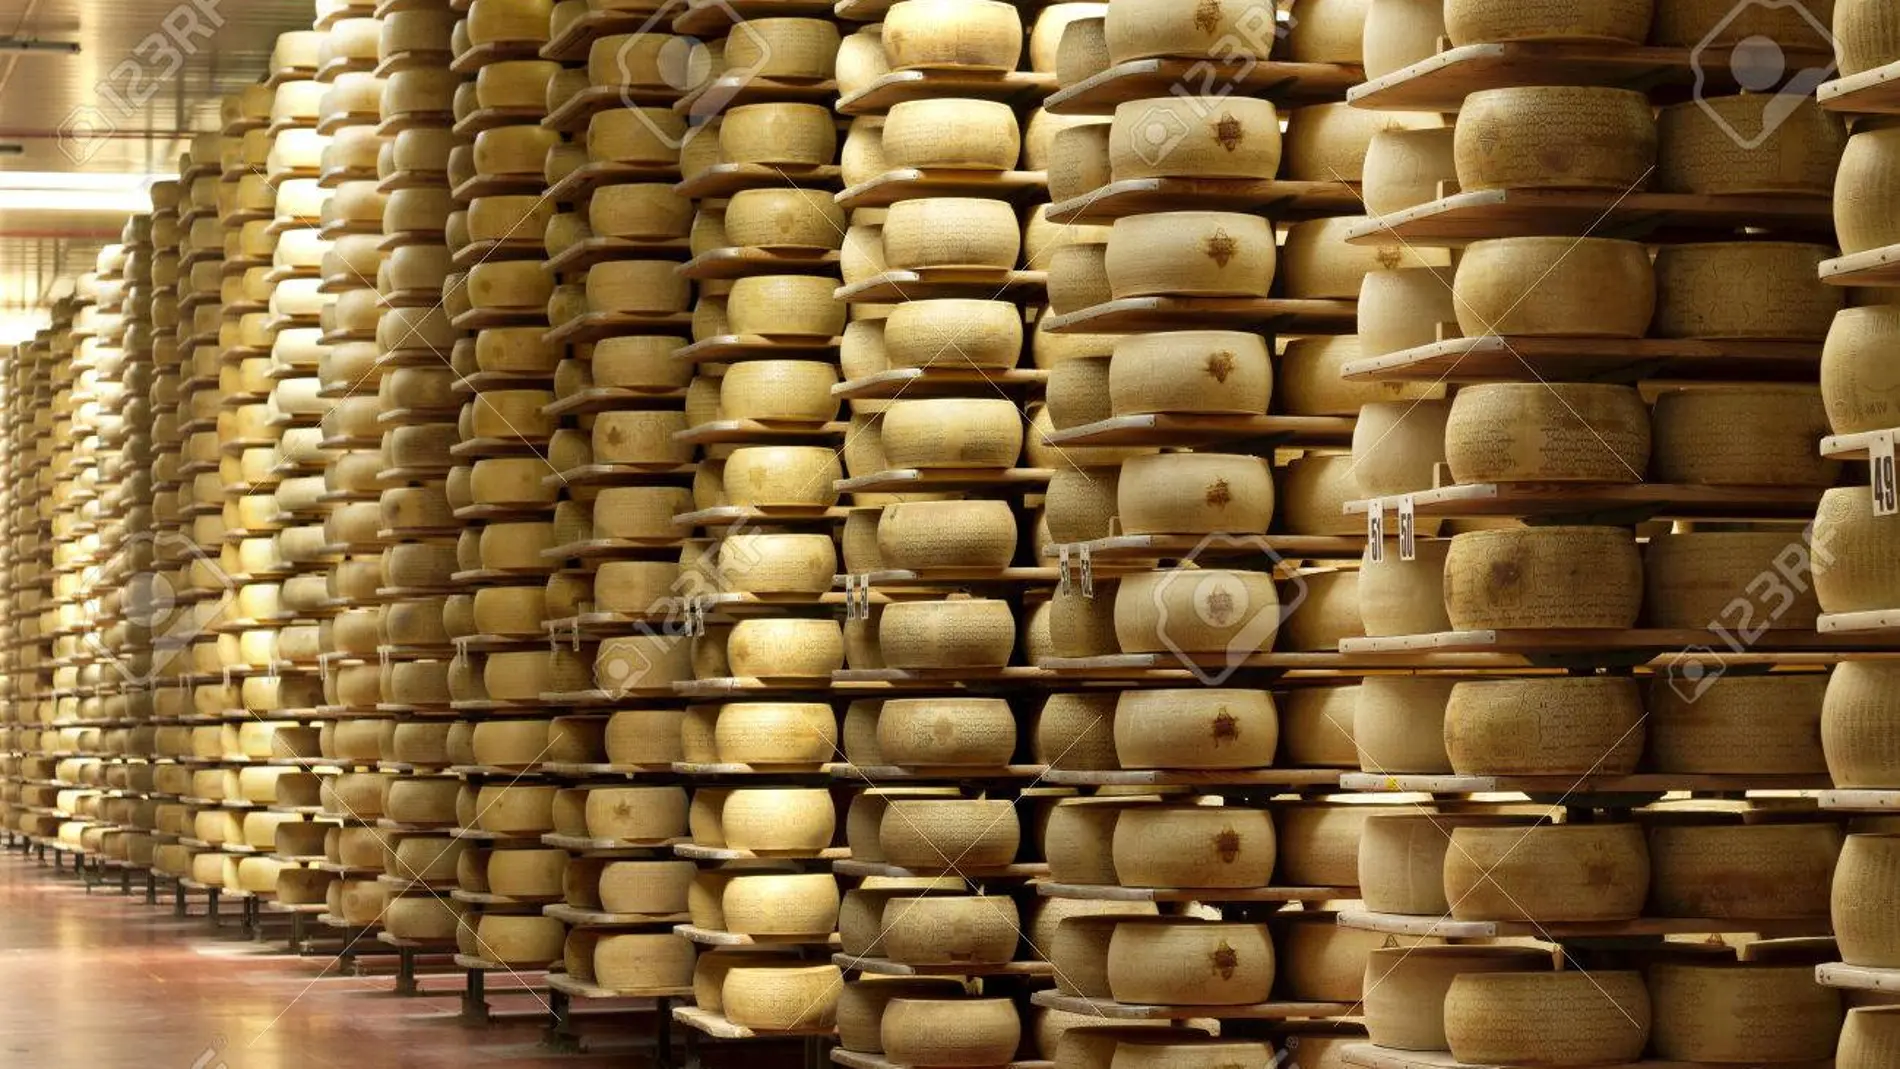 Accidente mortal: Un empresario italiano muere aplastado por 25.000 quesos Grana Padano